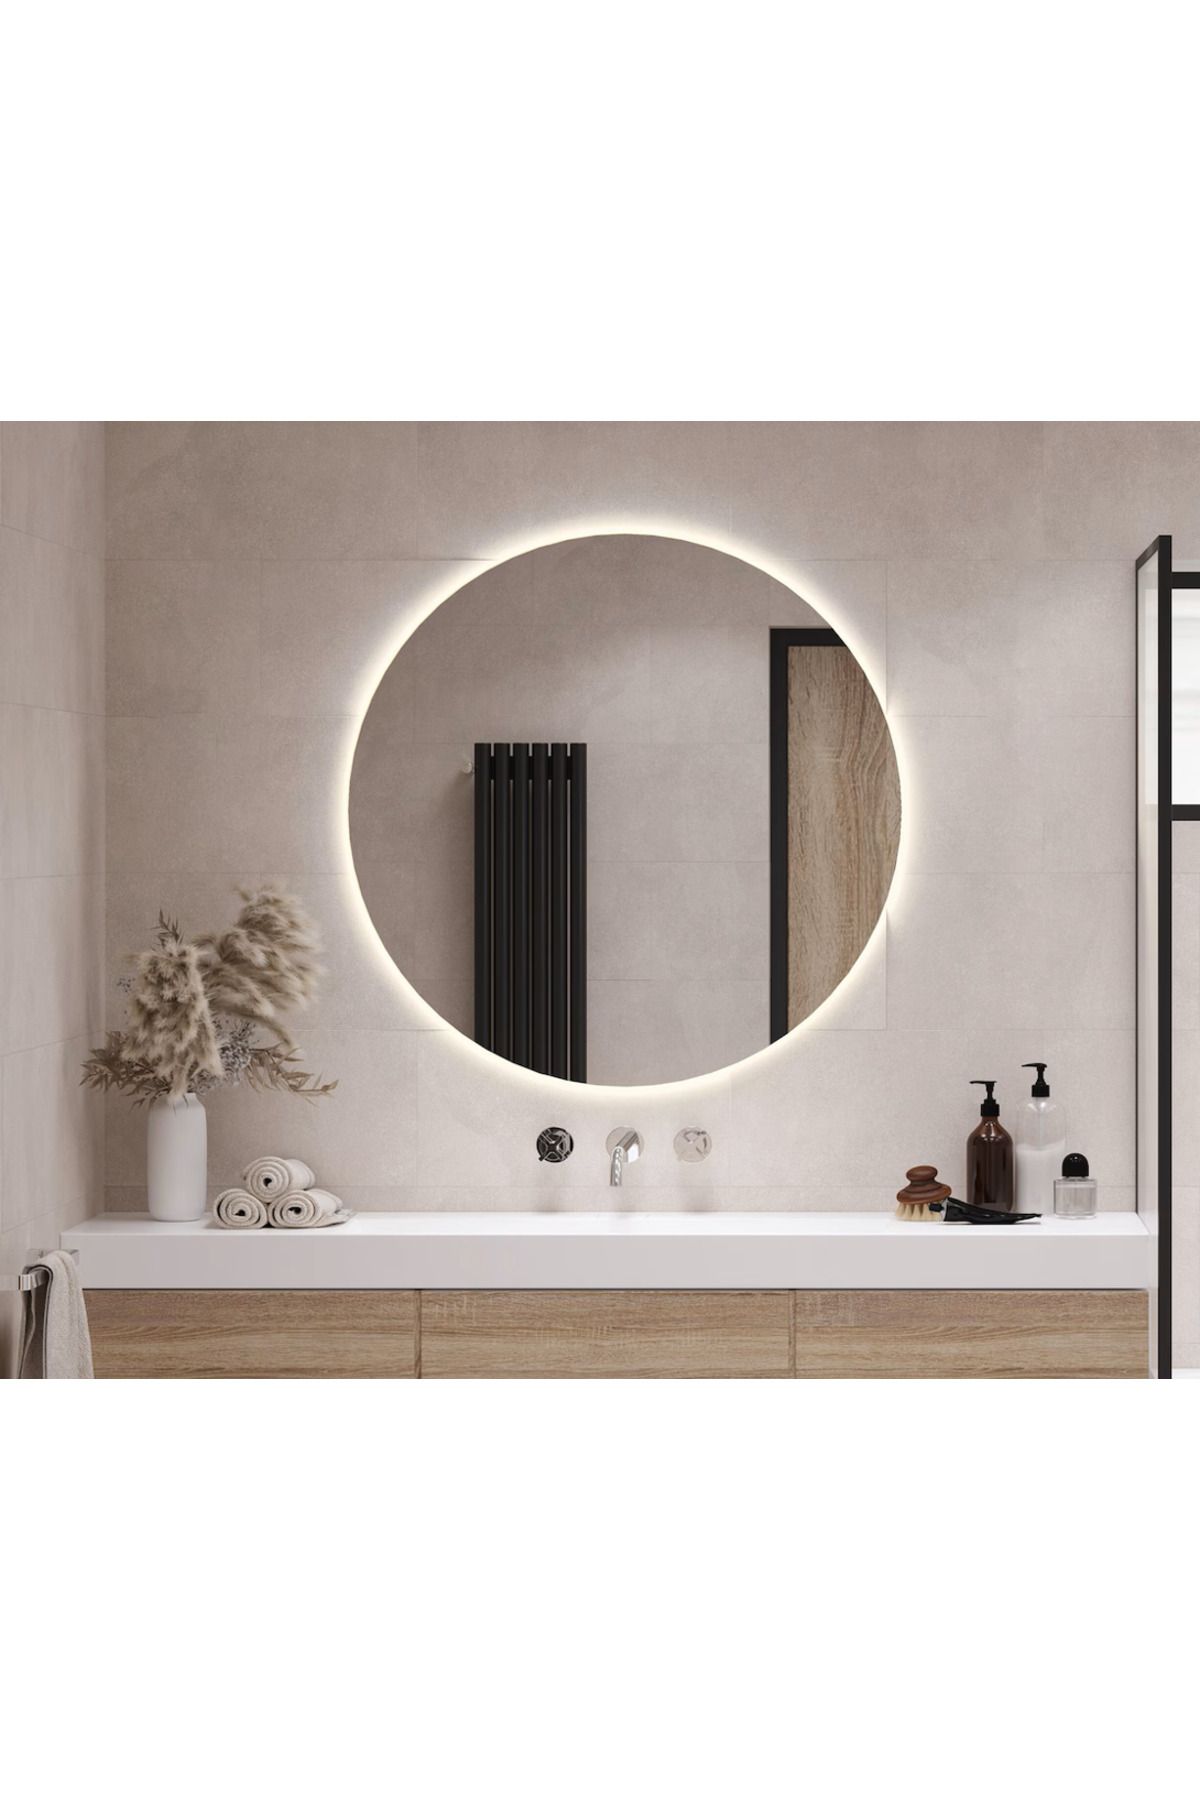 CG HOME Yuvarlak Ayna Gün Işığı Led Dekoratif Ayna, Rodajlı Kaliteli Ayna ,Konsol, Deresuar Aynası 90CM